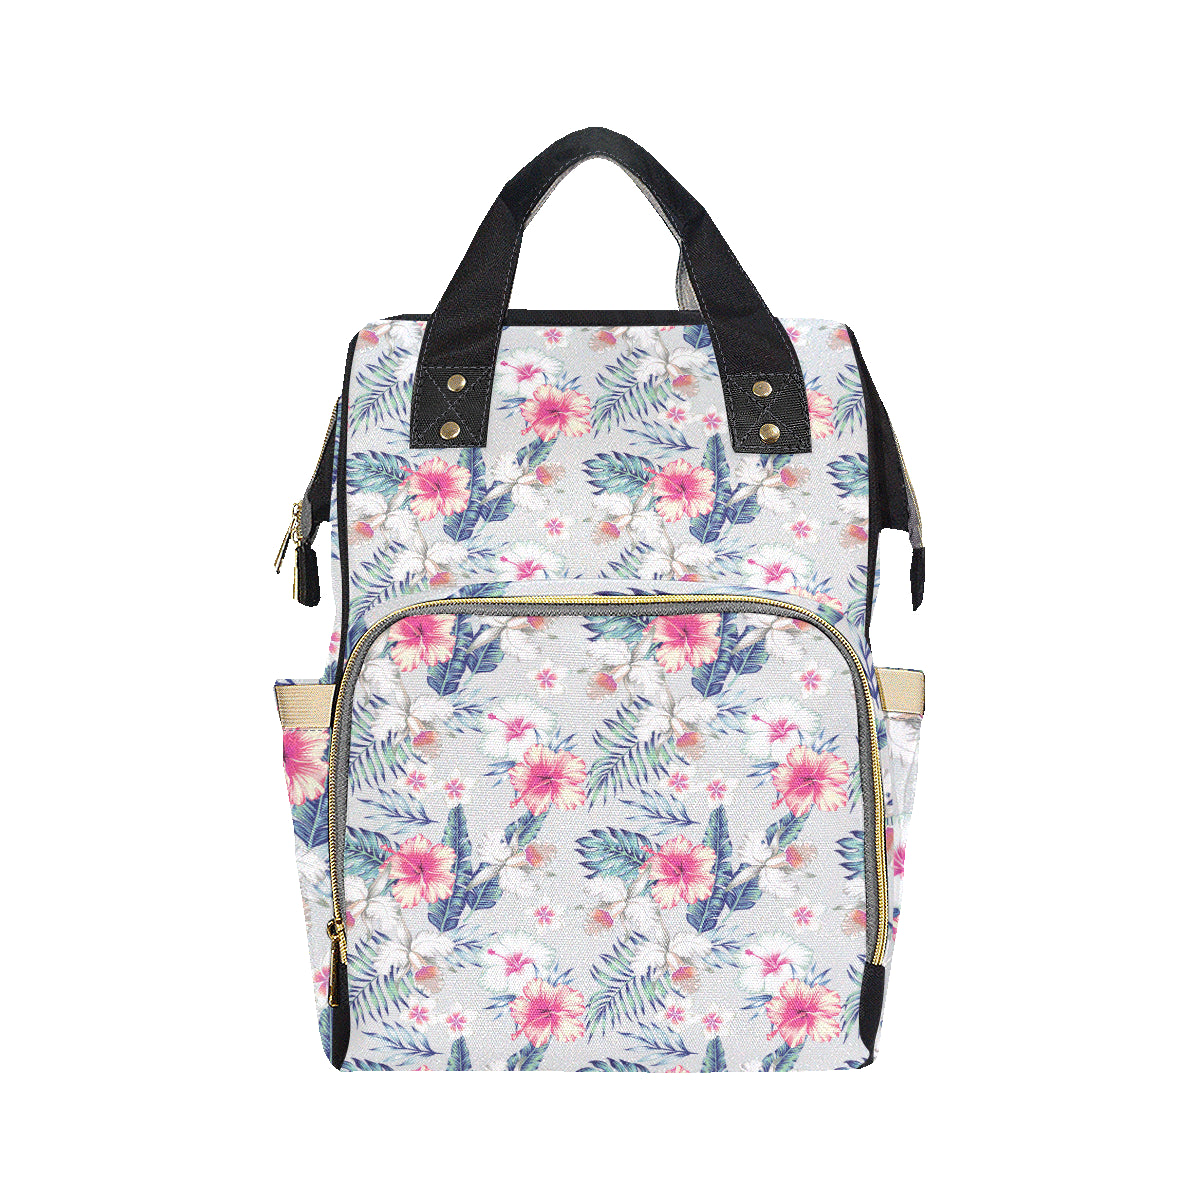 Hibiscus Print Diaper Bag Backpack